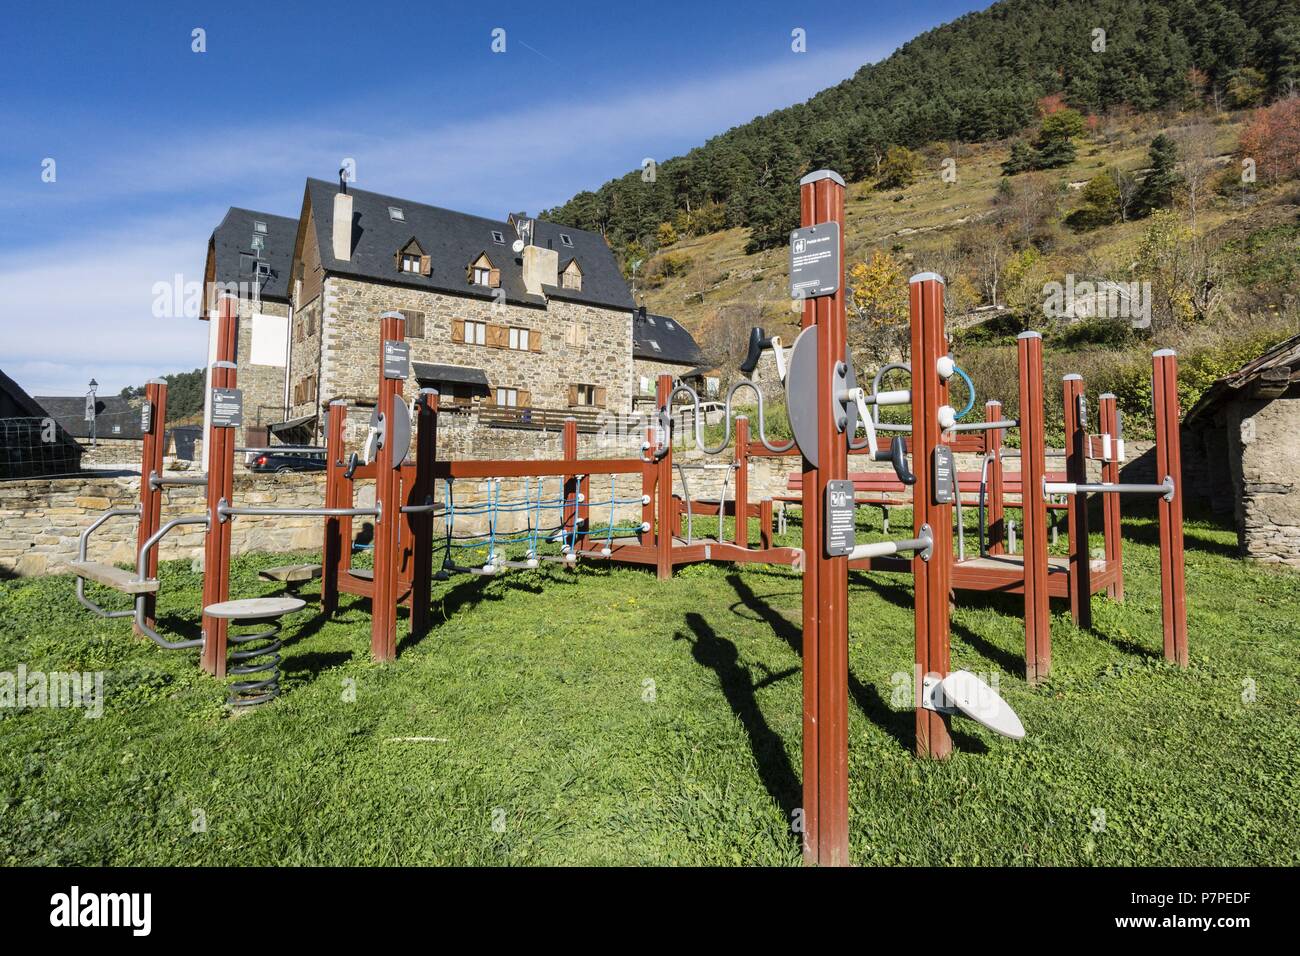 parque infantil y urbano, Vilamos, valle de Aran, Catlunya, cordillera de los Pirineos, Spain, europe. Stock Photo